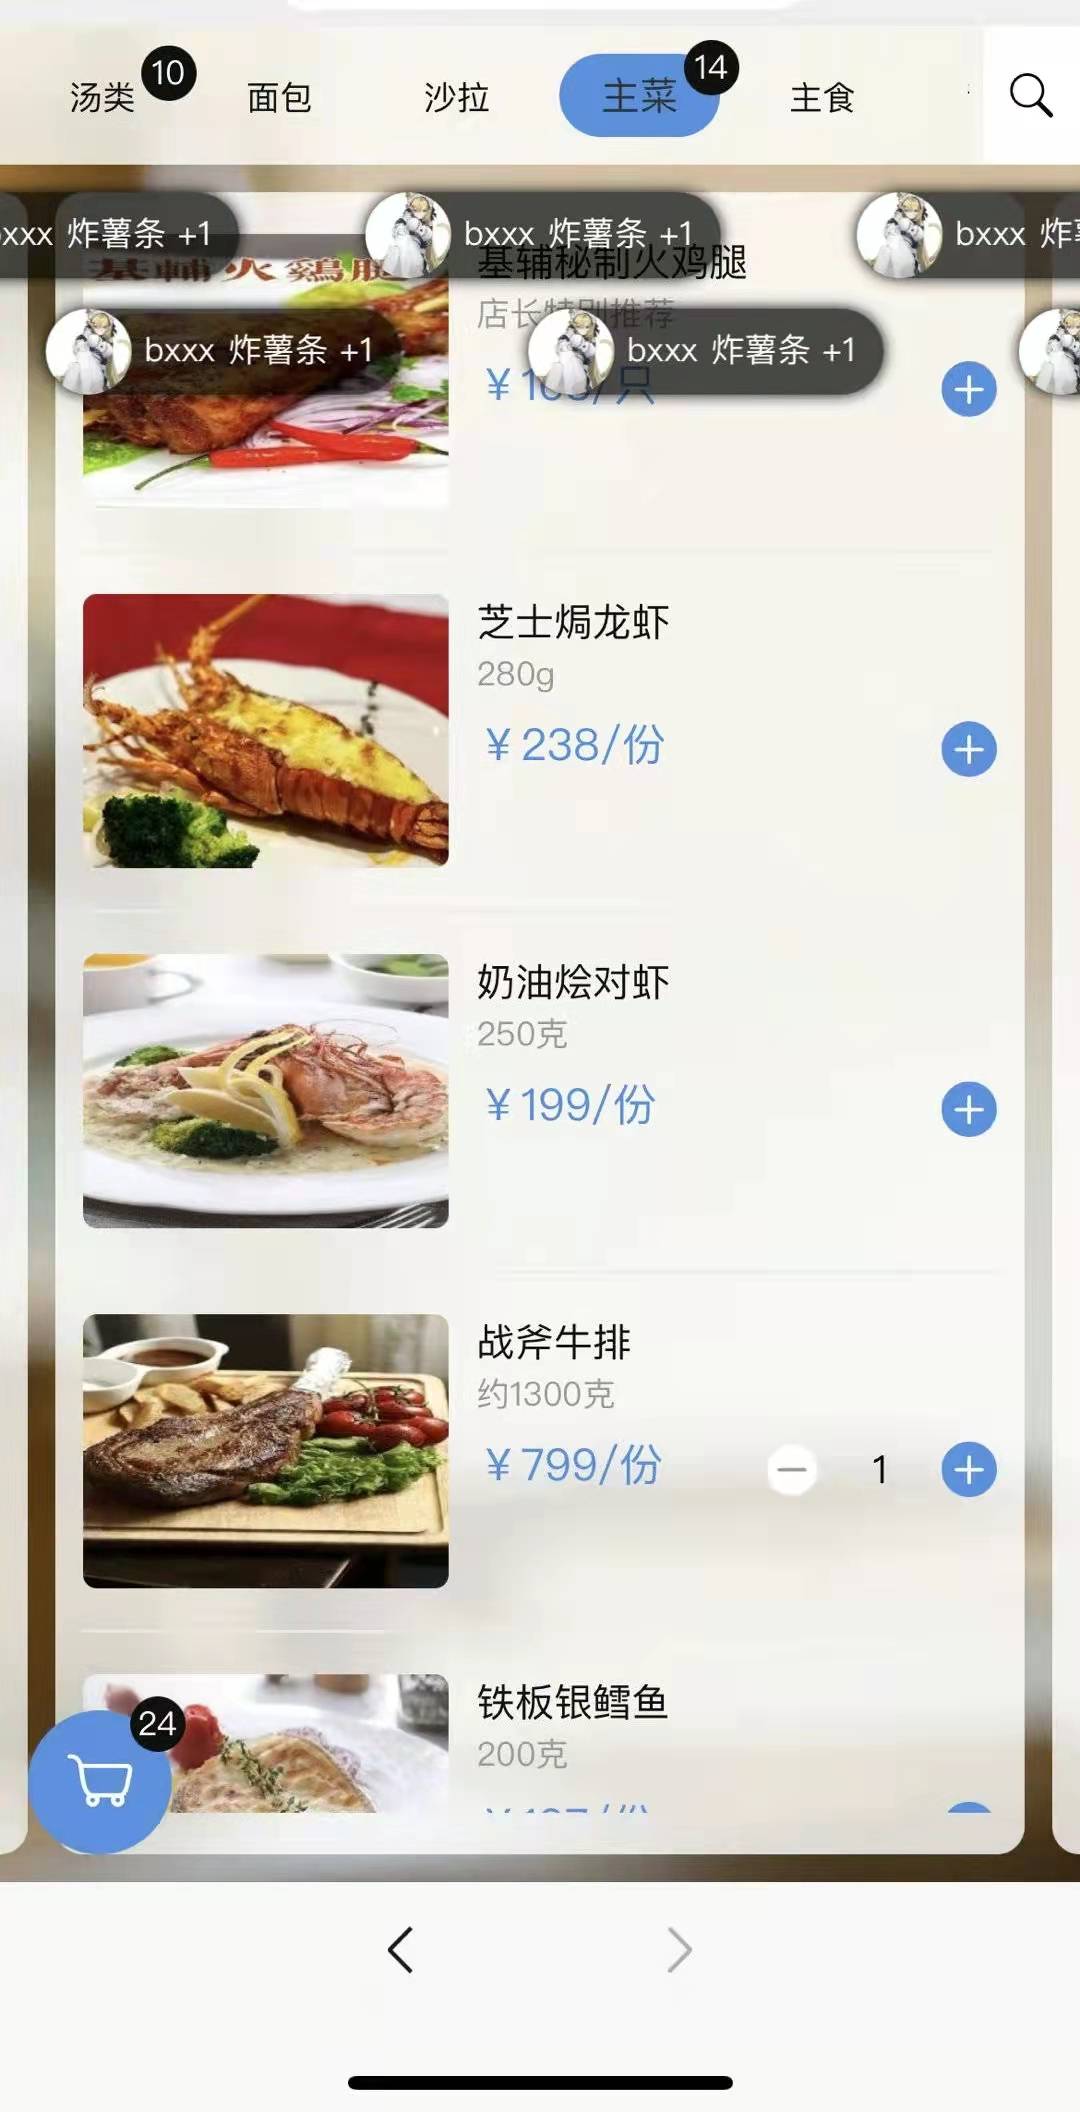 北京主播“二猪”晒二维码被网友强制点餐315万元，该由谁买单？-幽兰花香